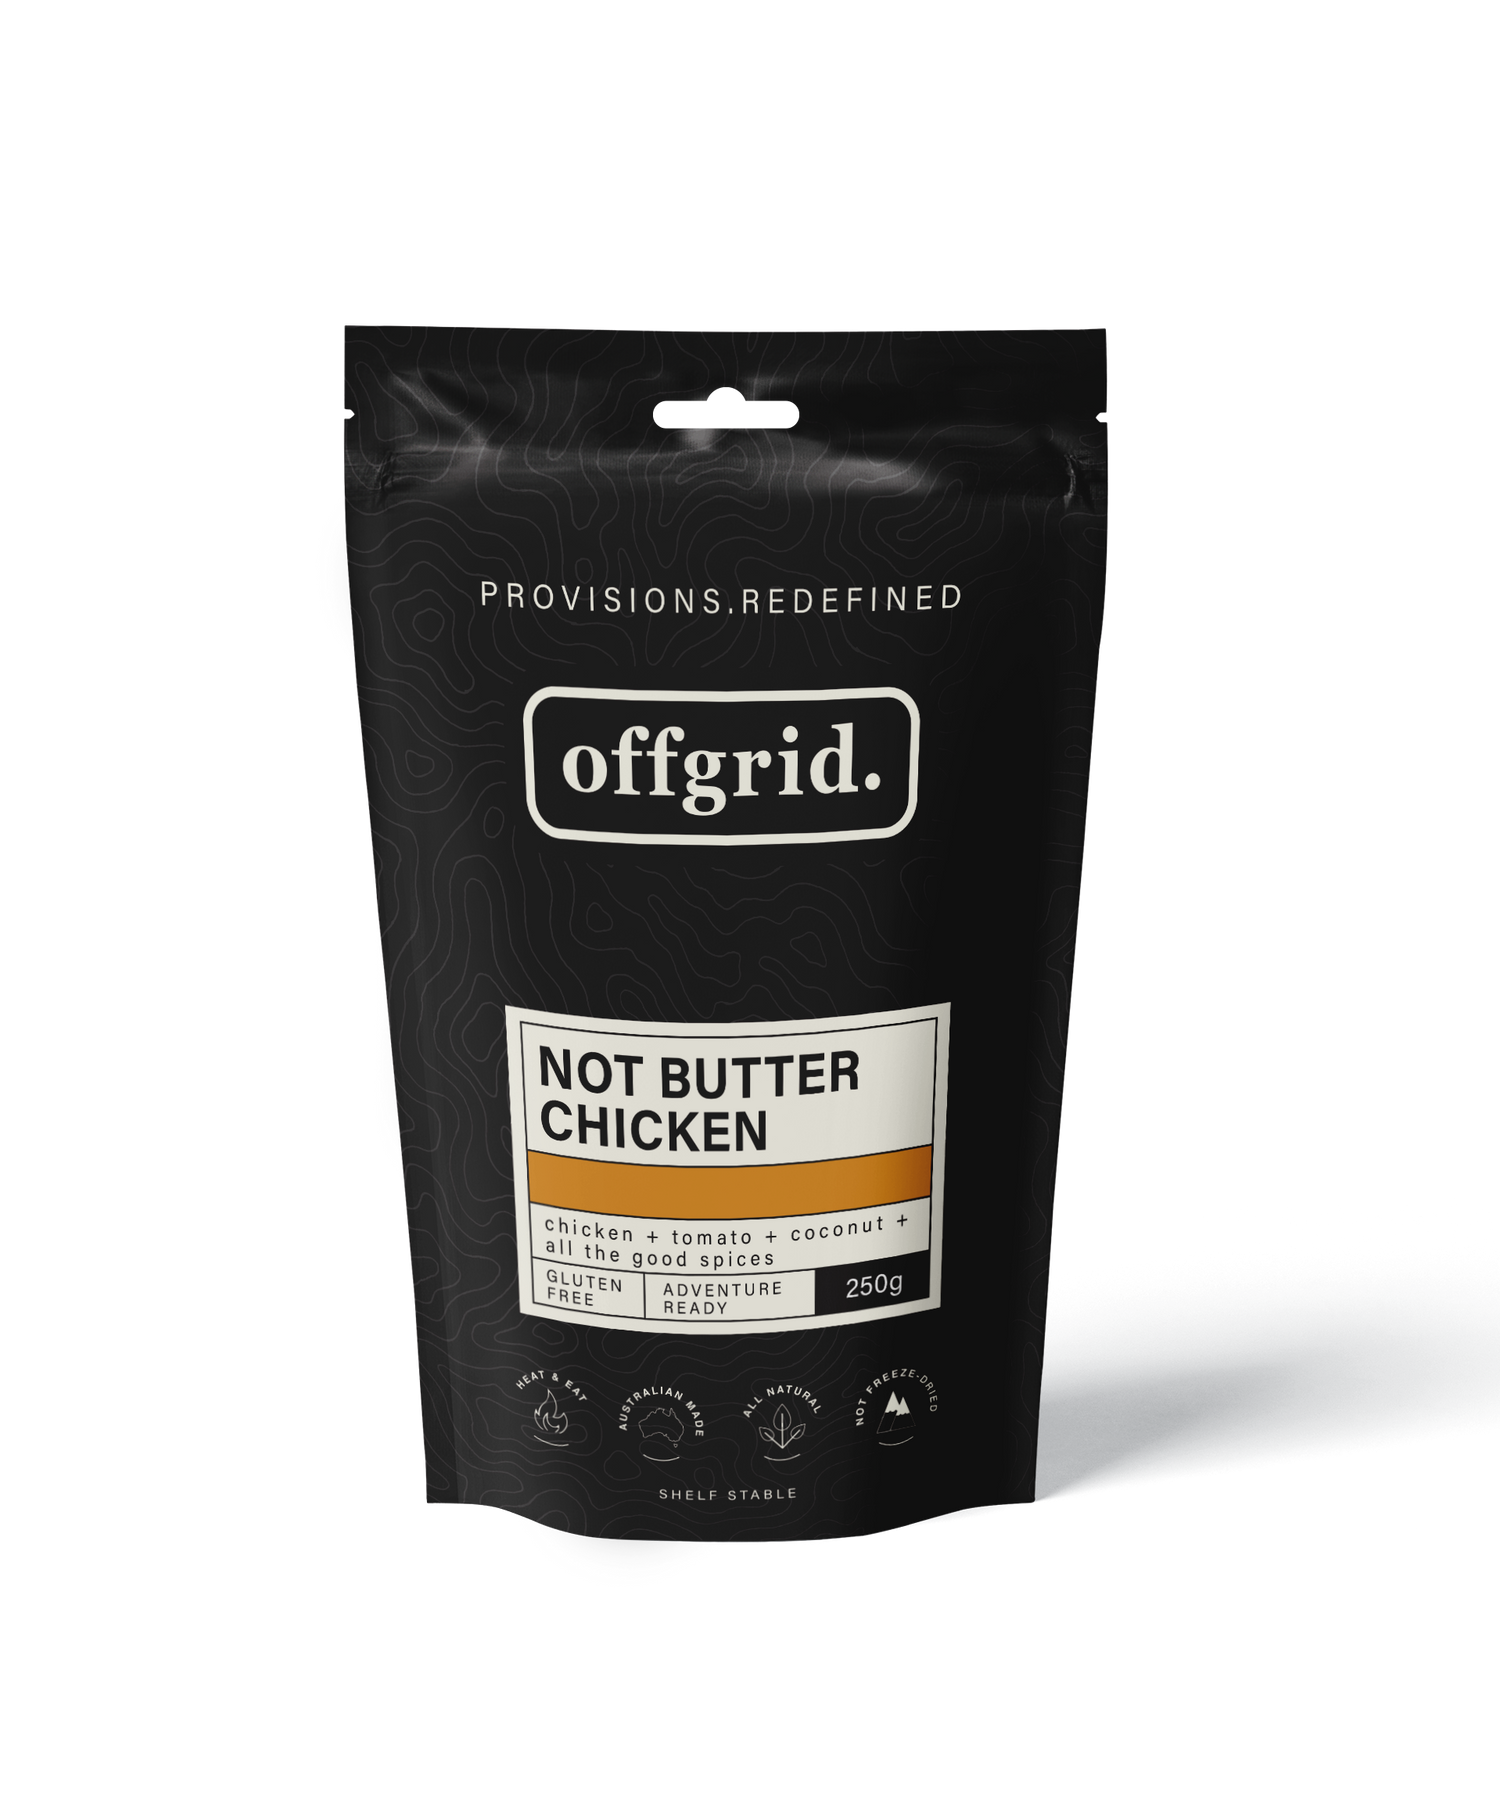 Offgrid Not Butter Chicken - Heat & Eat Meal